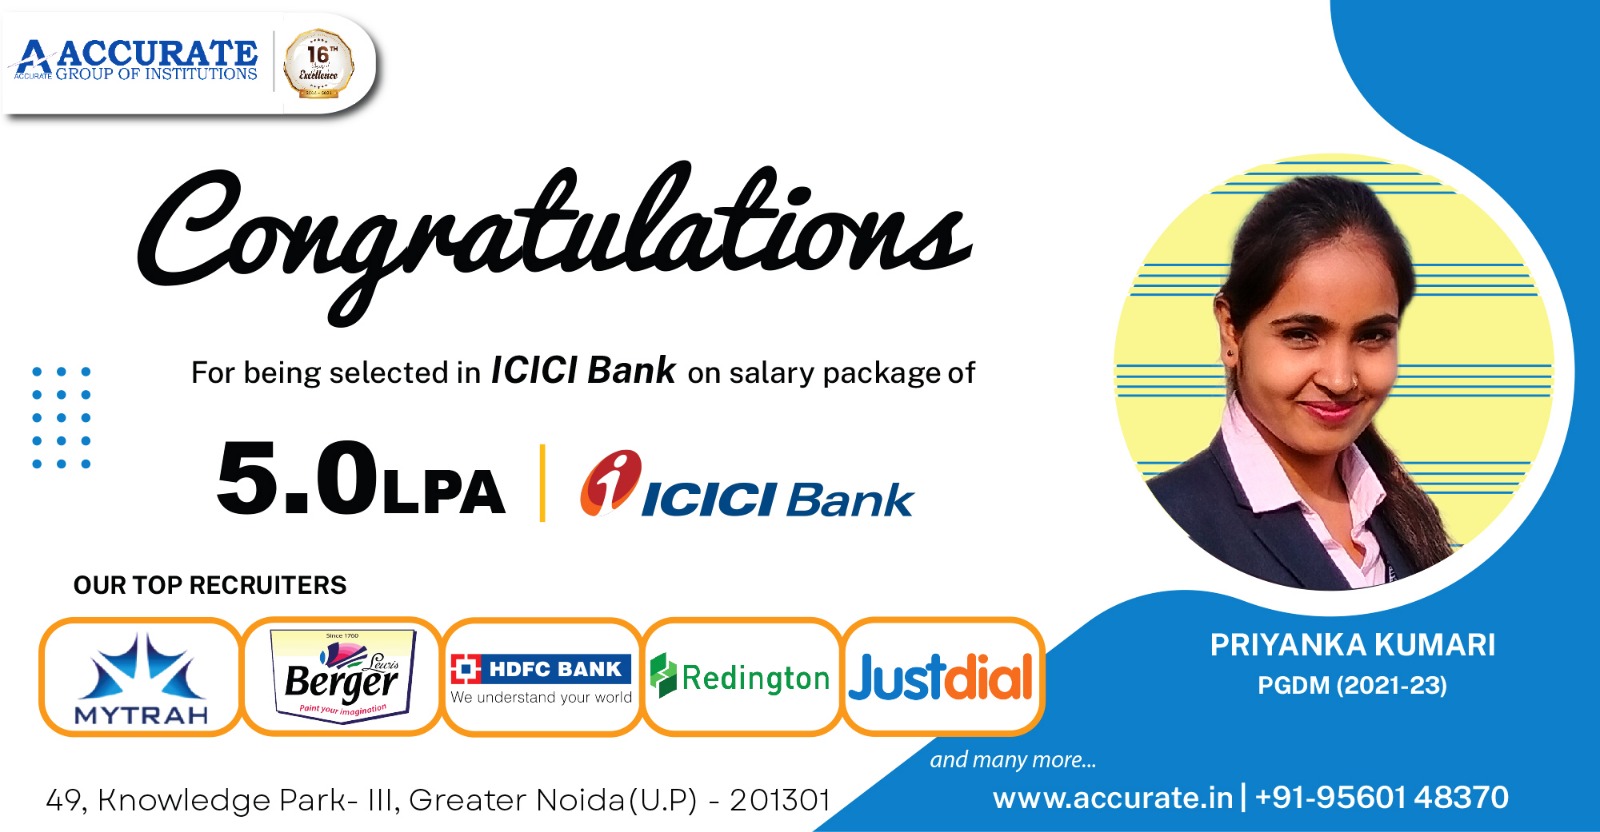 Priyanka Kumari Selected by ICICI Bank